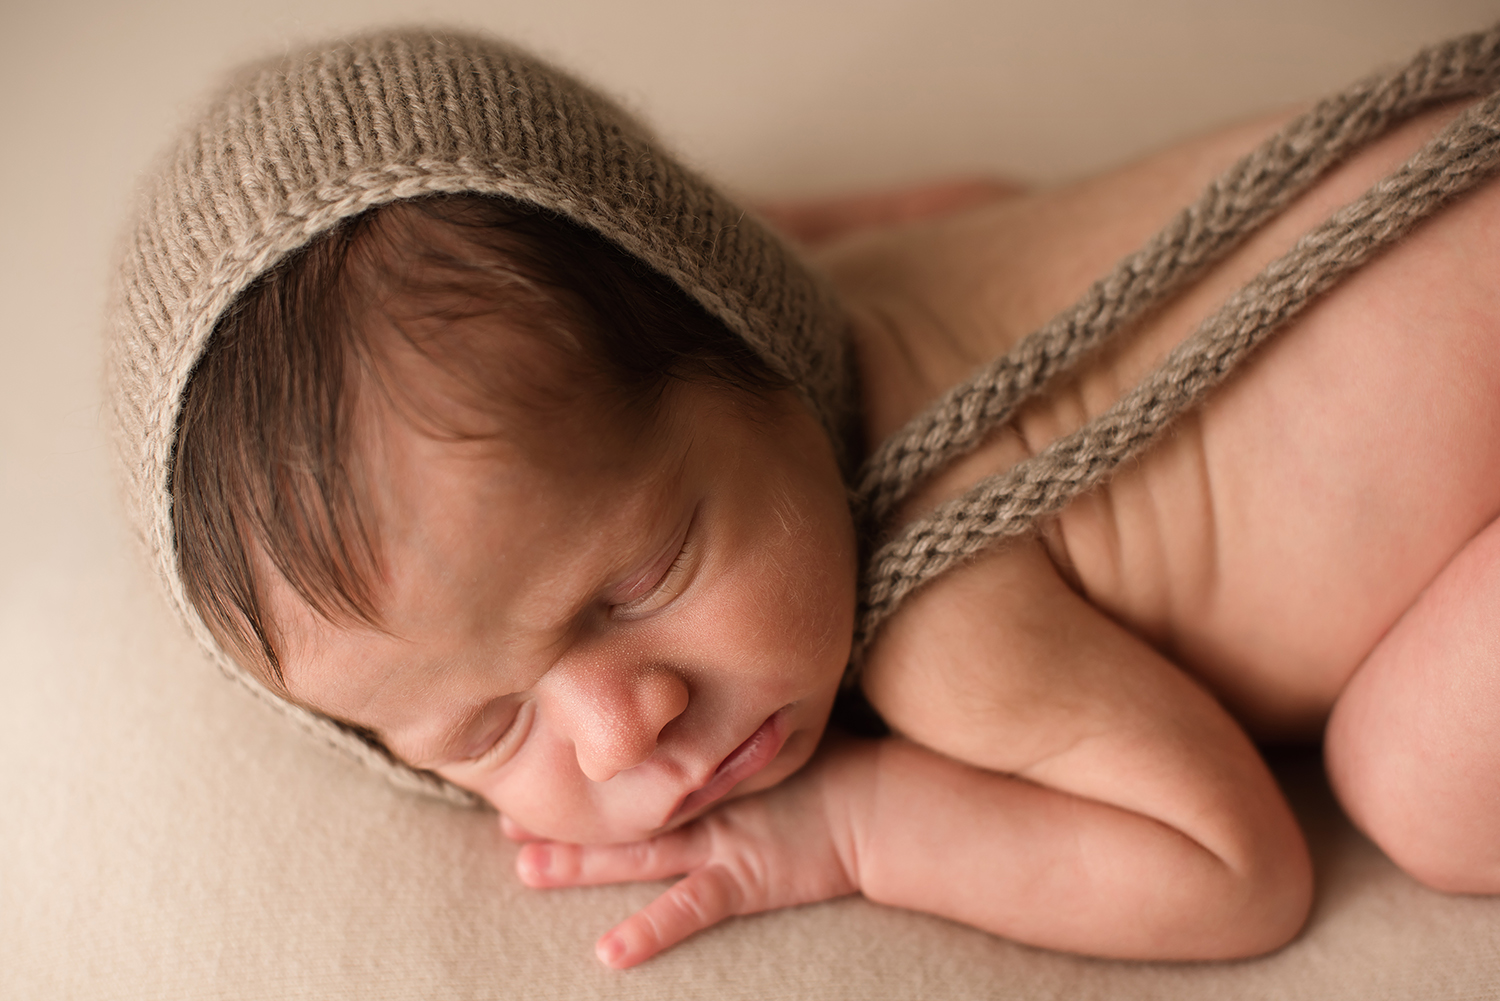 dublin-ohio-newborn-photographer-bare-baby.jpg